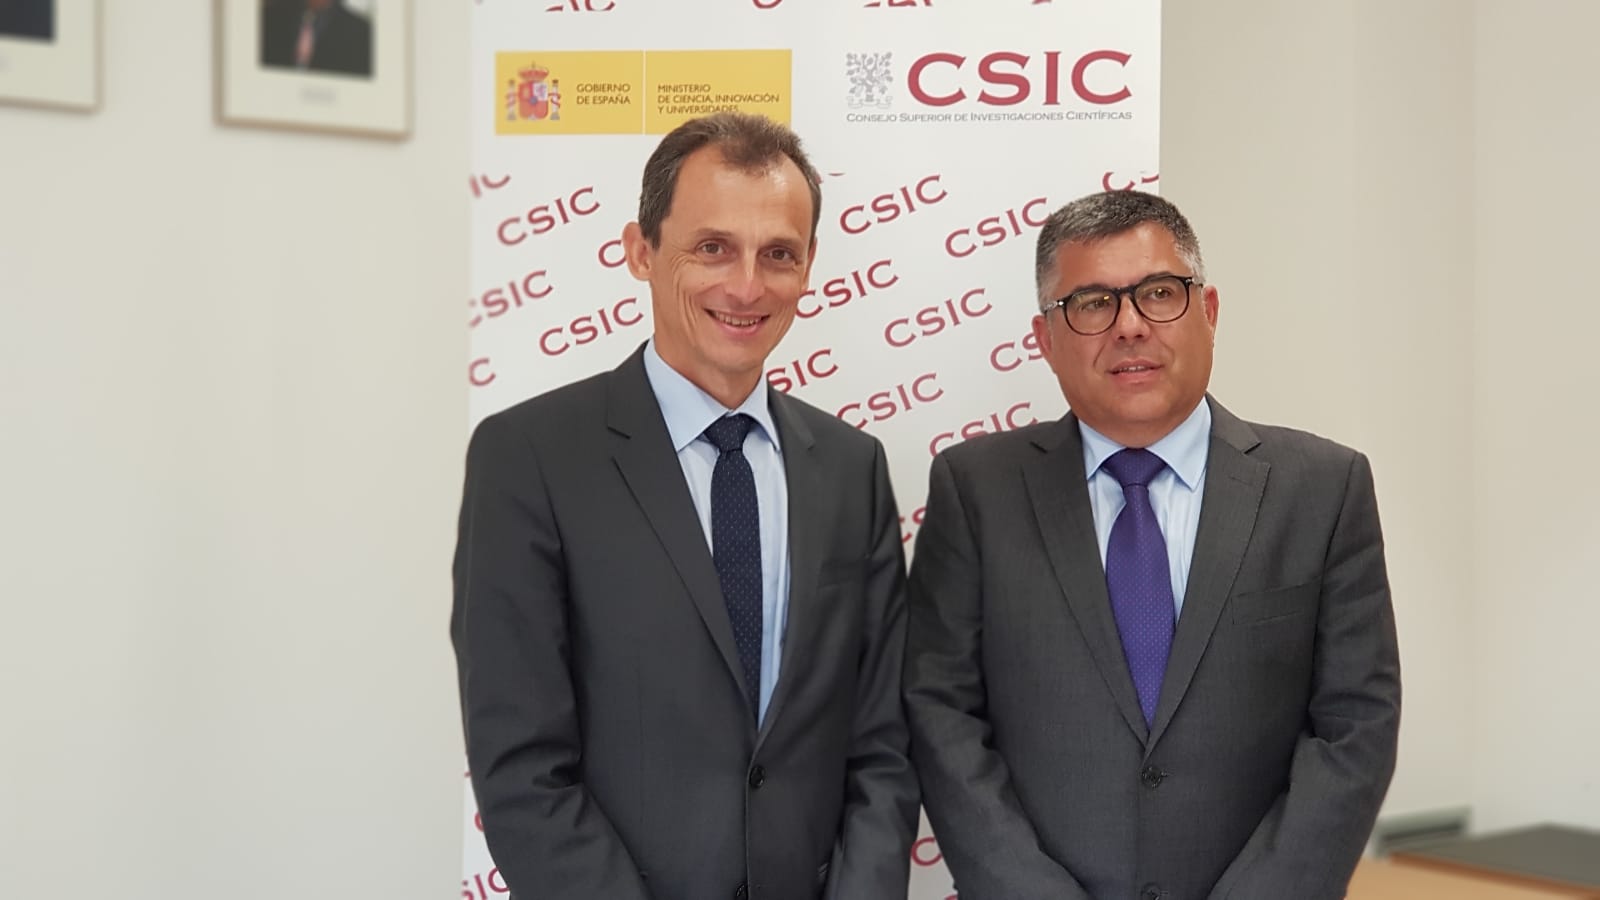  El ministro Pedro Duque inaugura la Casa de la Ciencia del CSIC en Valencia 